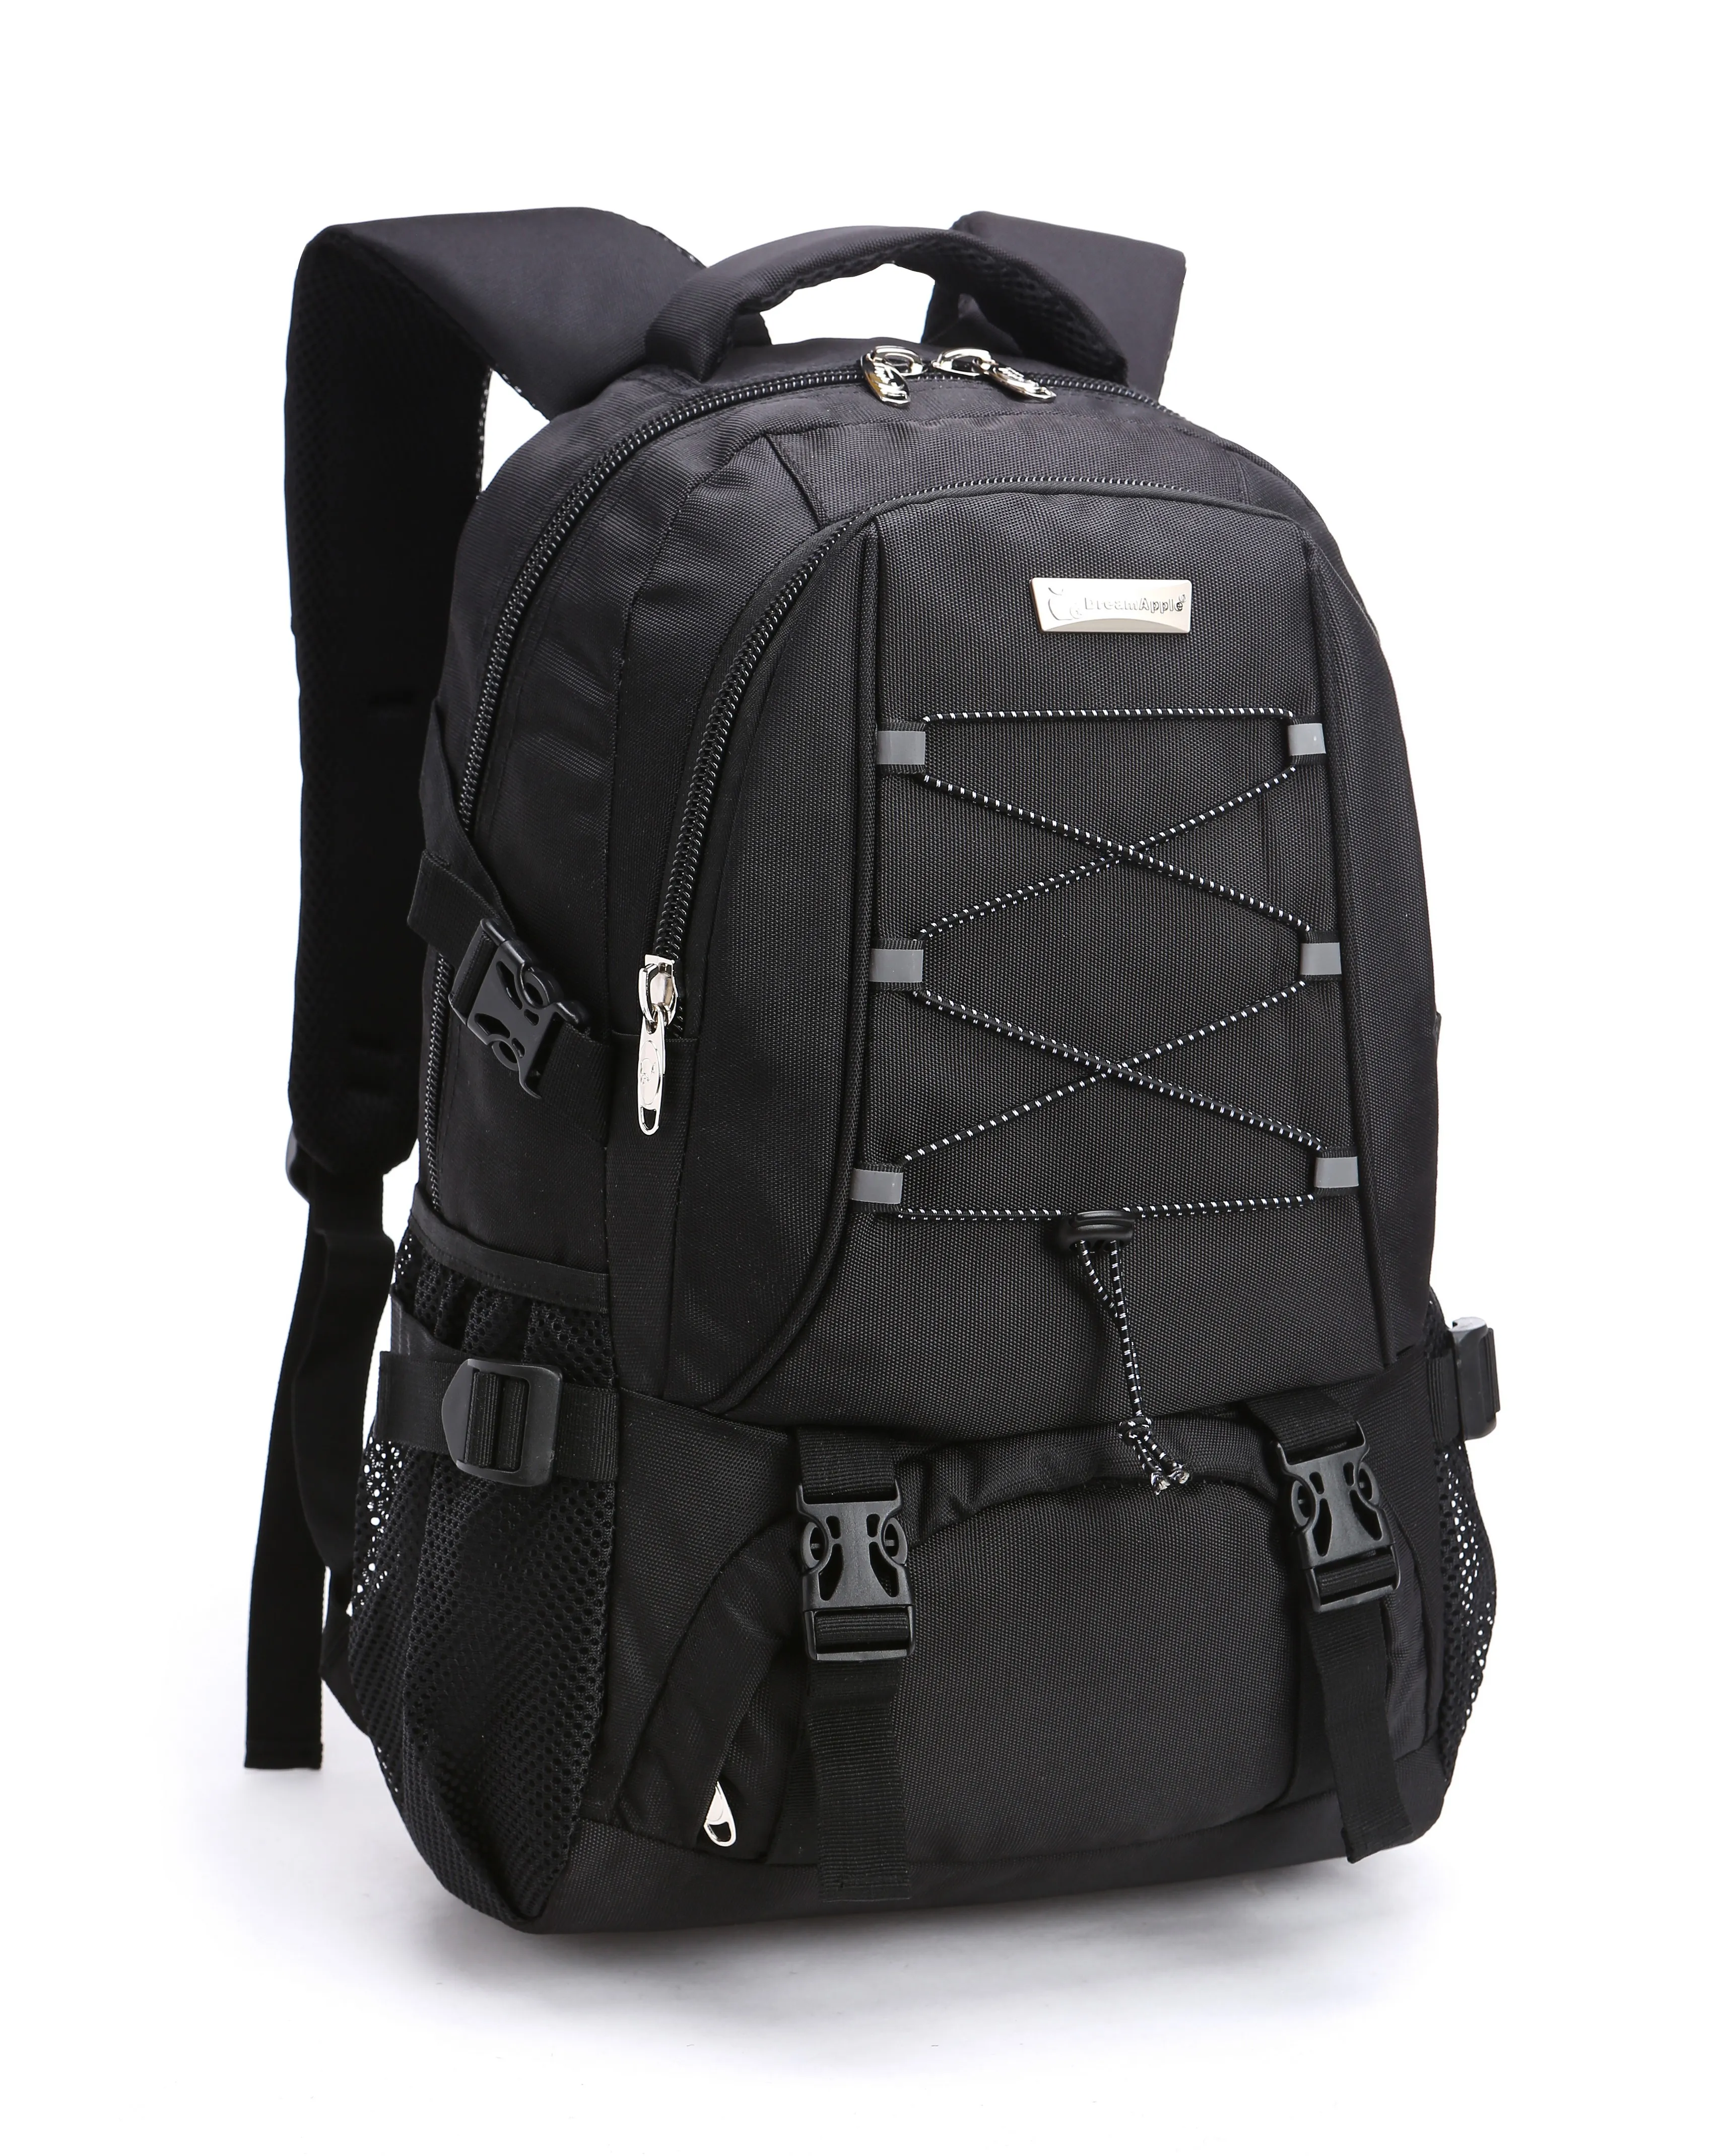 Открытый рюкзак для ноутбука Офисный рюкзак для путешествий Компьютерная сумка Школьный рюкзак подходит для 15,6-дюймового ноутбука и ноутбука для работы, школы, кемпинга и